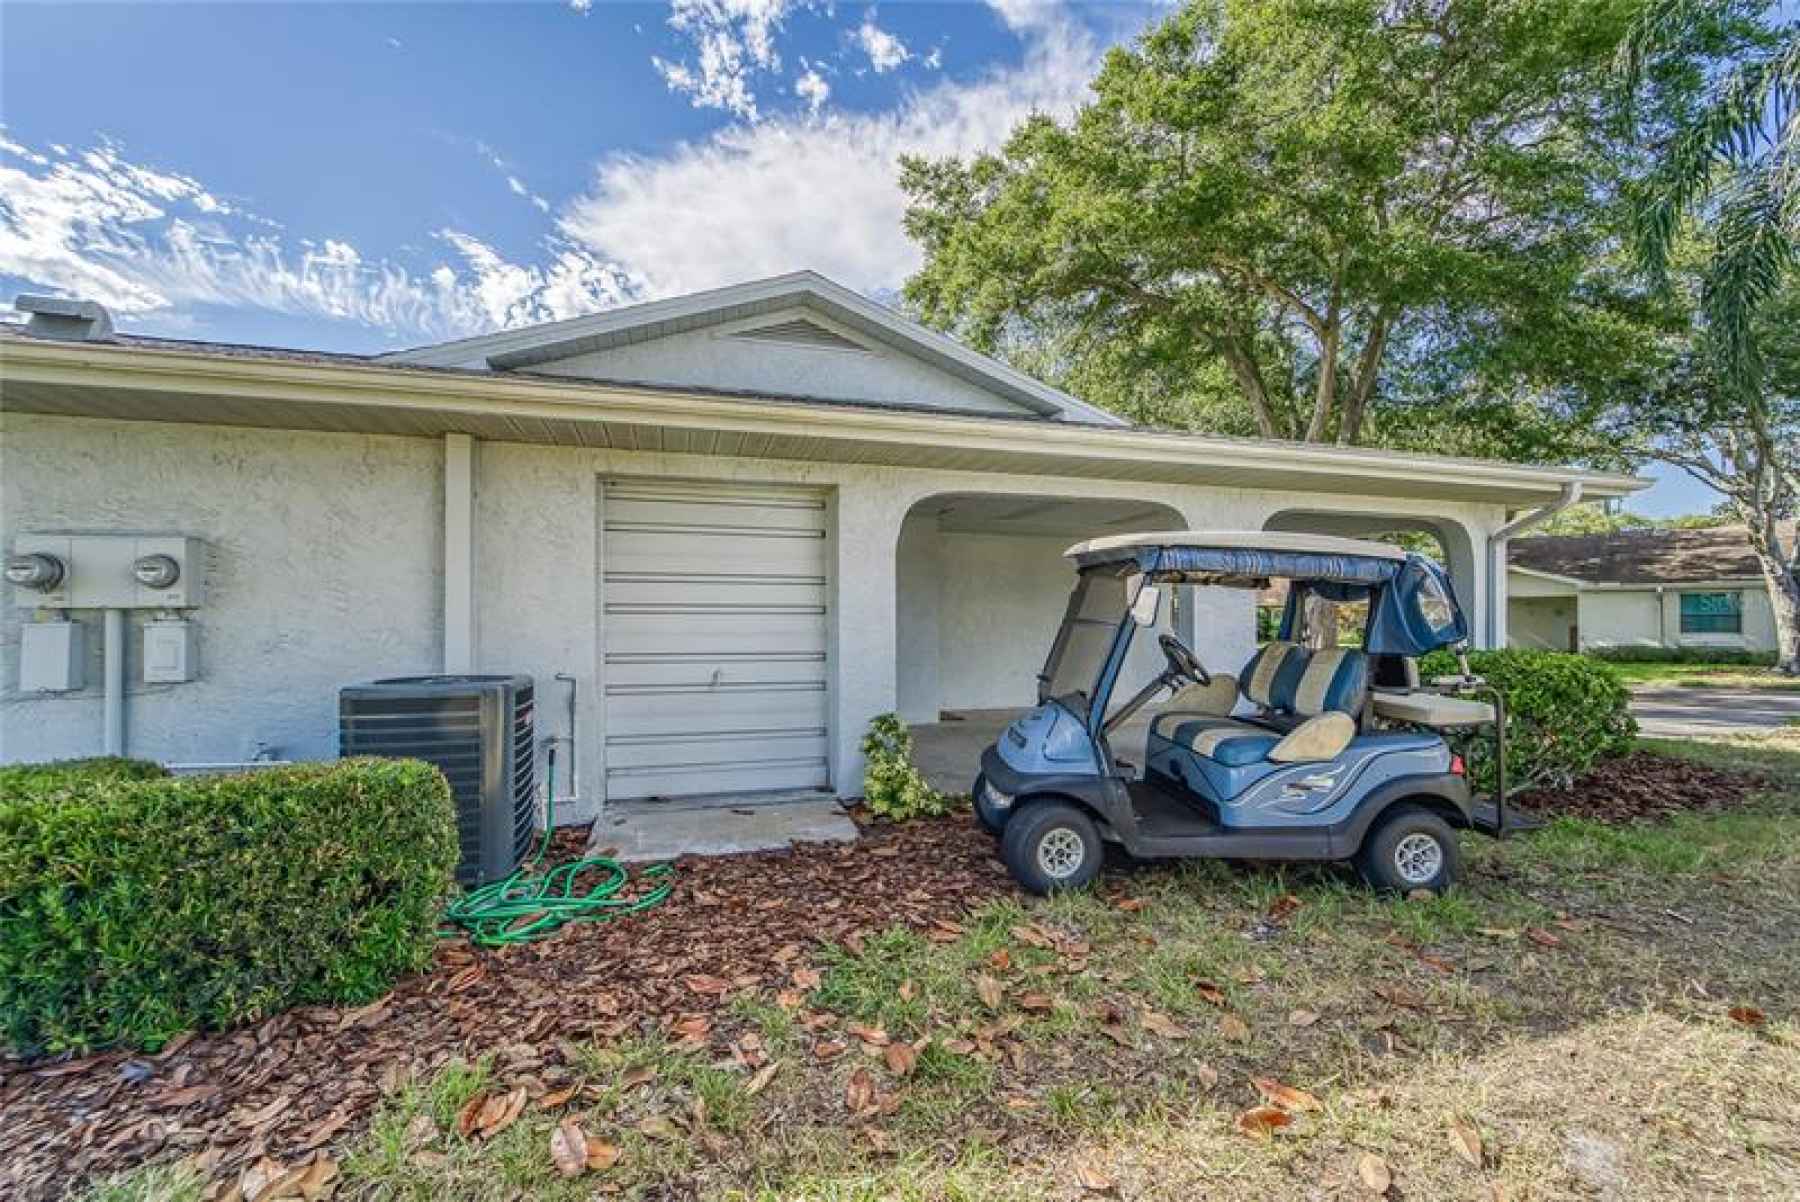 Golf cart garage